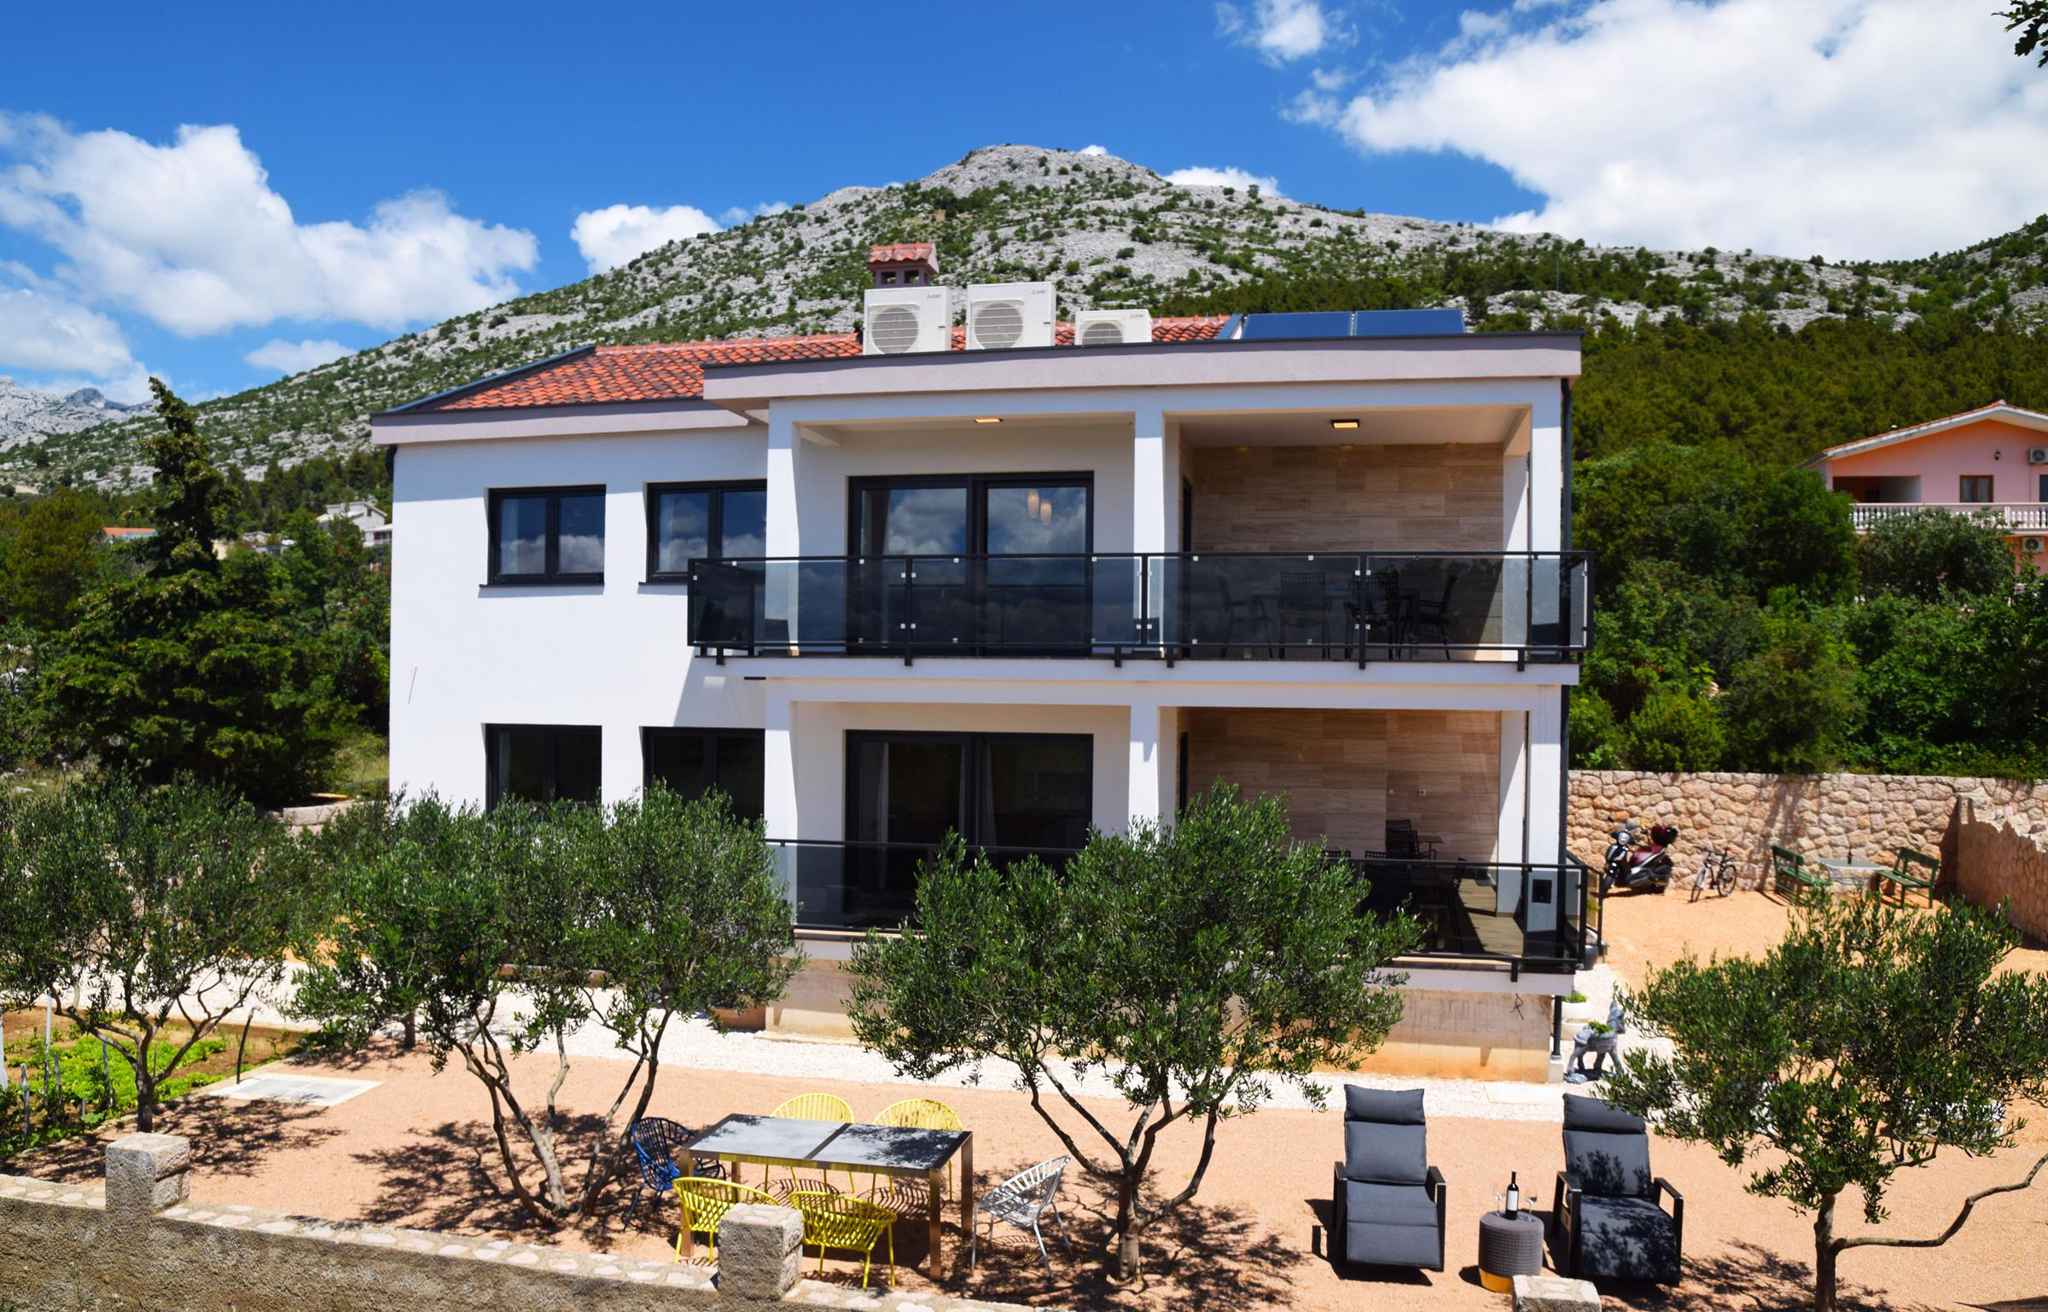 Ferienwohnung für 7 Personen mit Meerblick  in Dalmatien